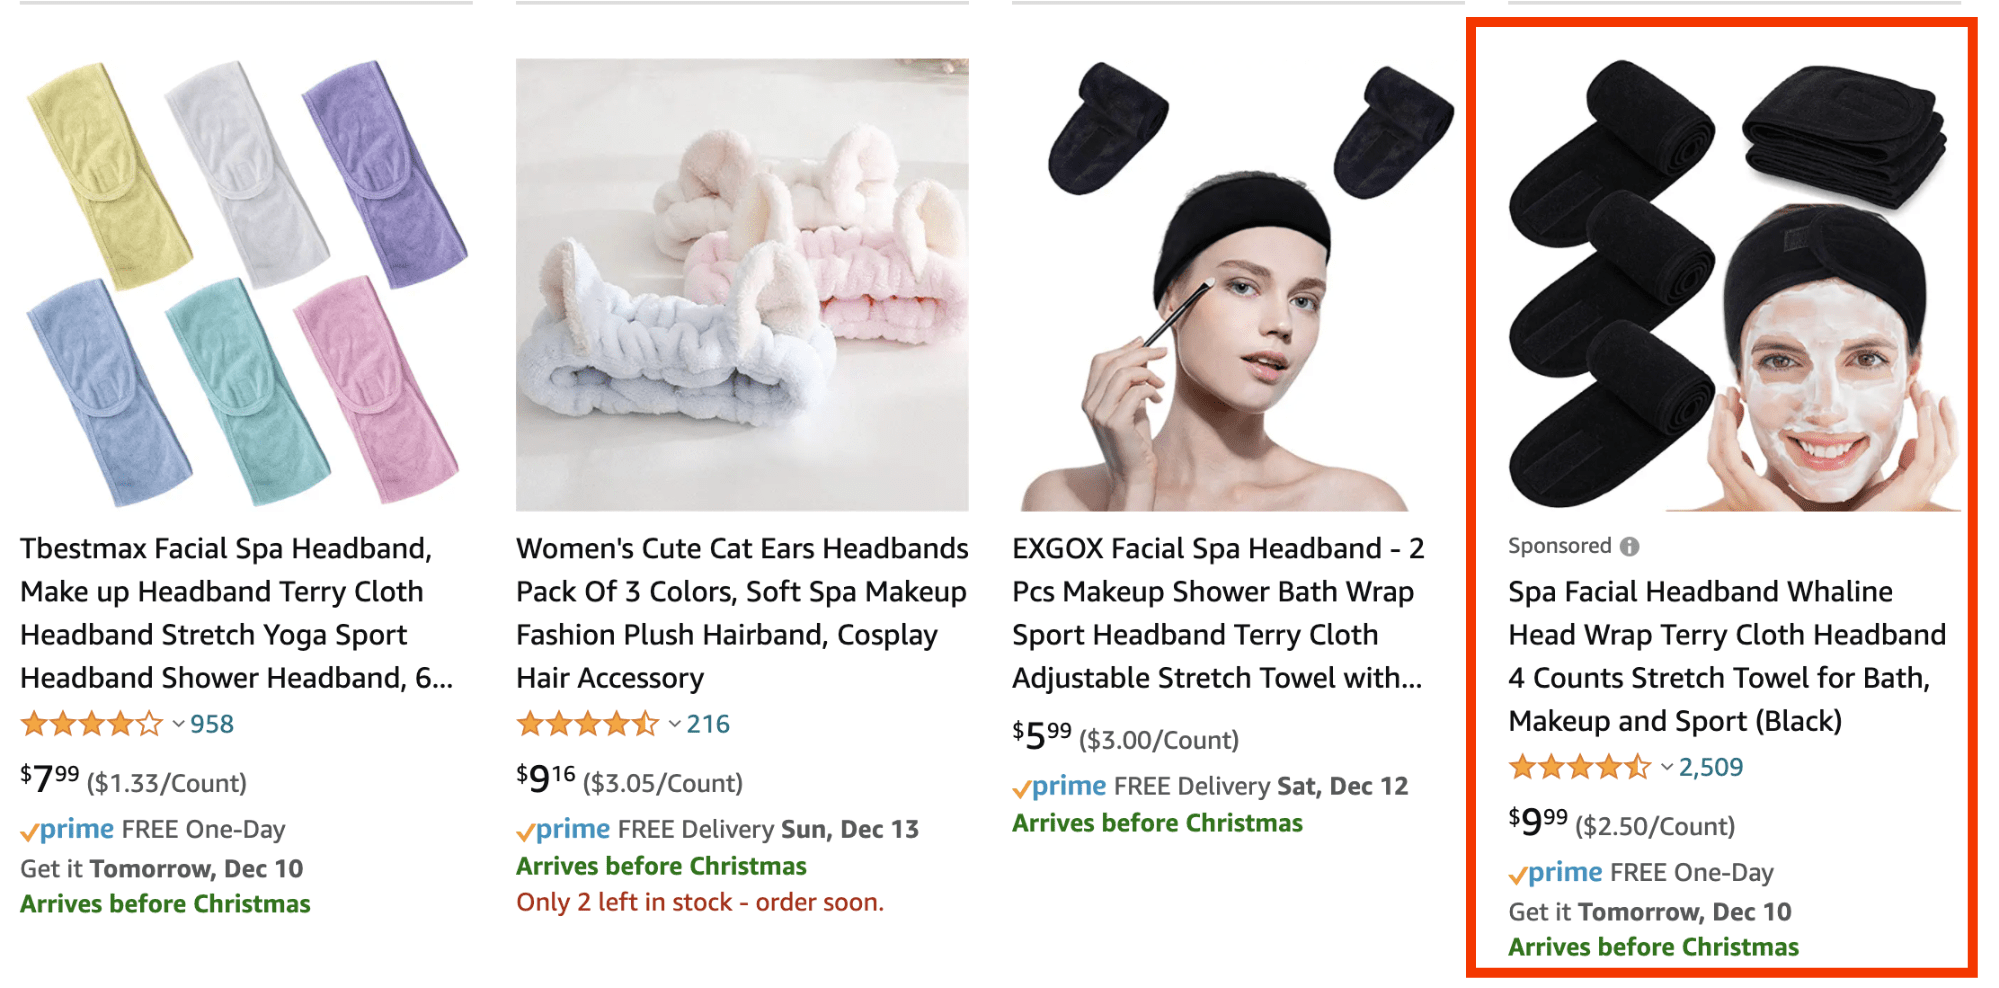 Amazon ad for spa facial headband